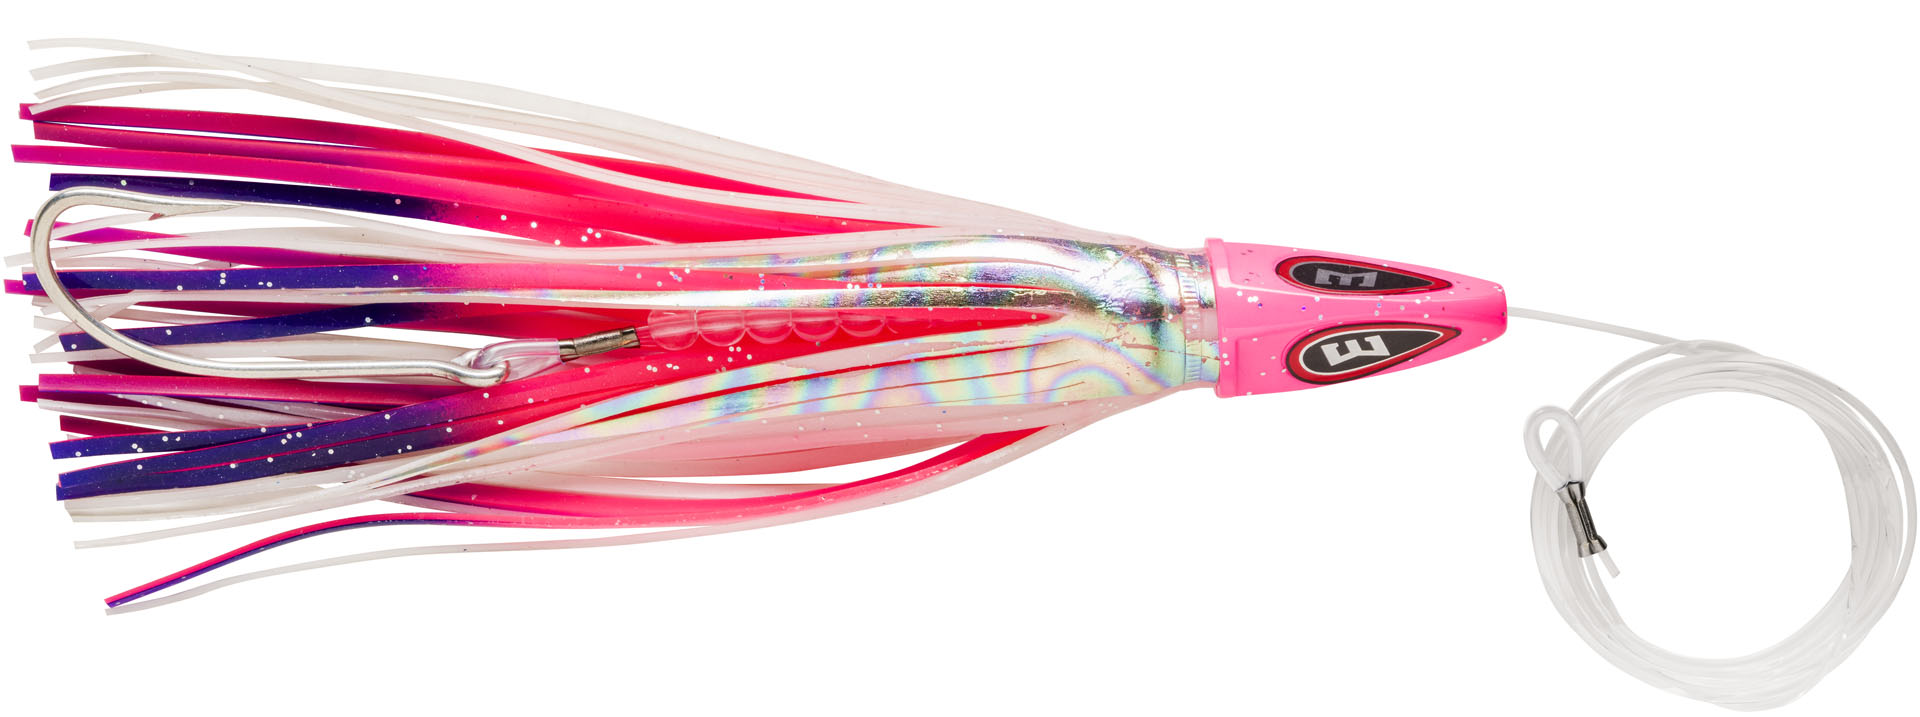 Bas de ligne Mer Williamson Hspeed Tuna Catcher Rig 19cm (99g) - Candy floss